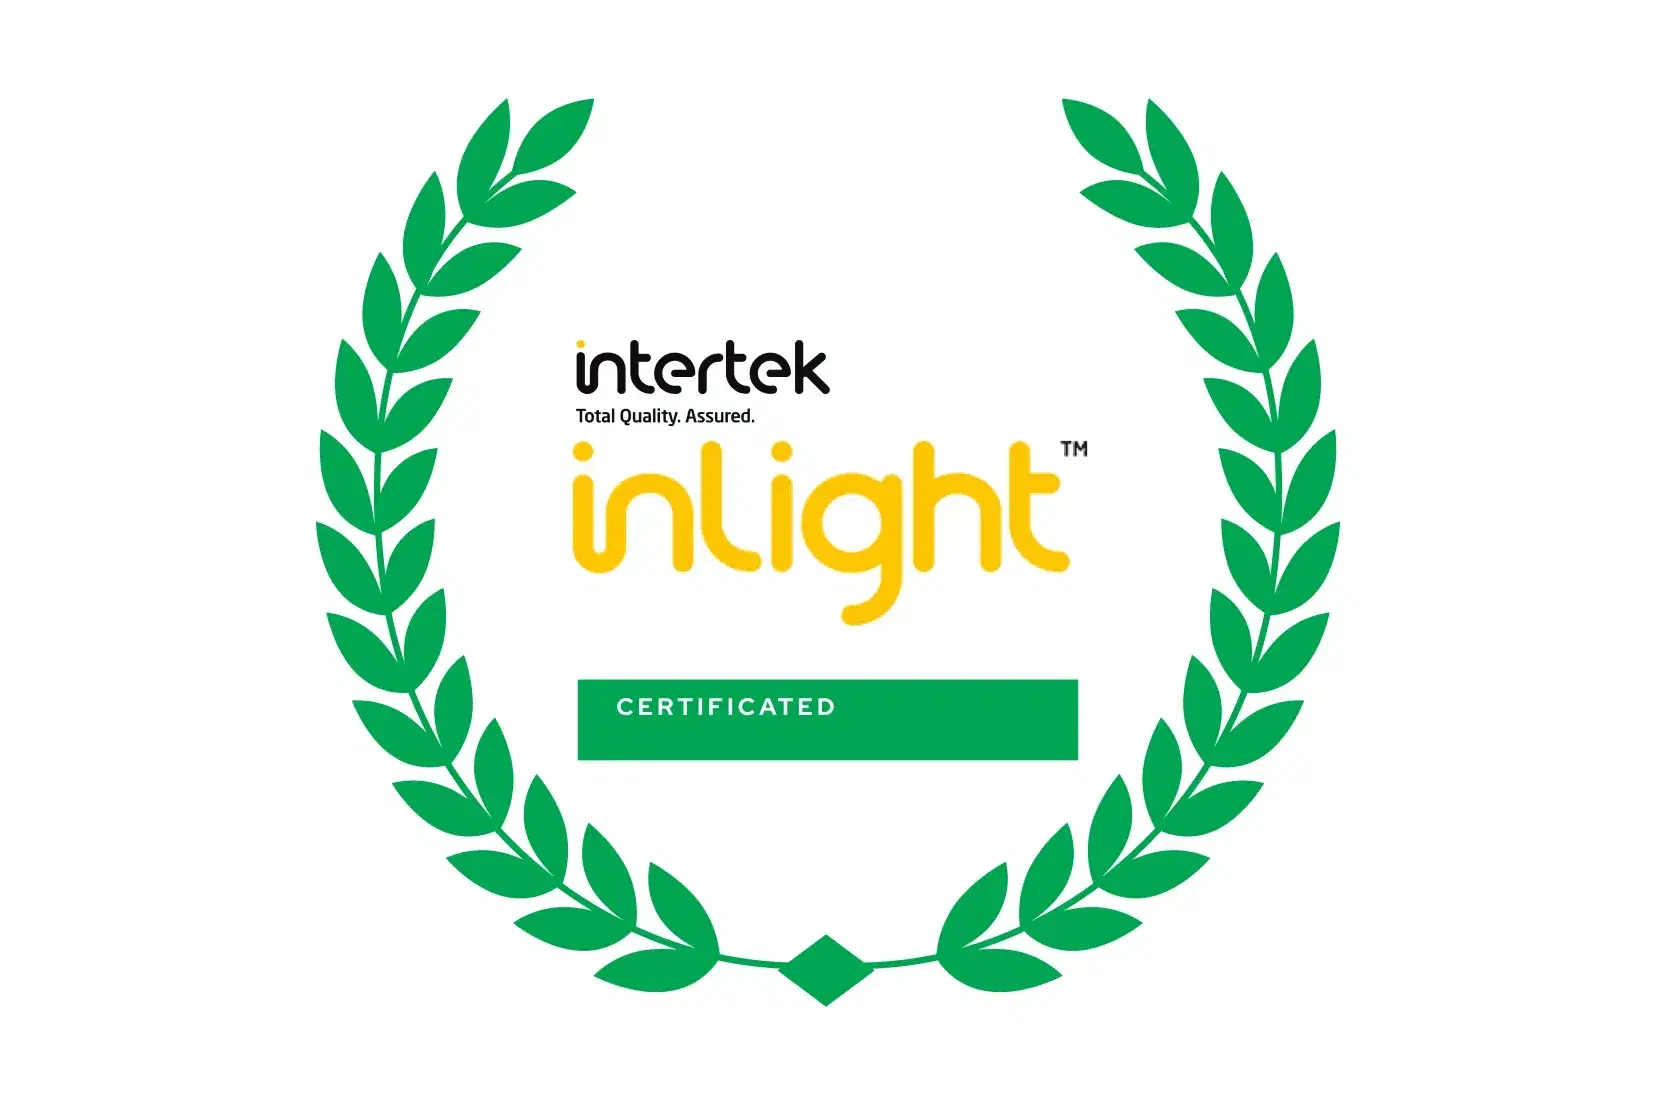 Intertek Inlight Certificate